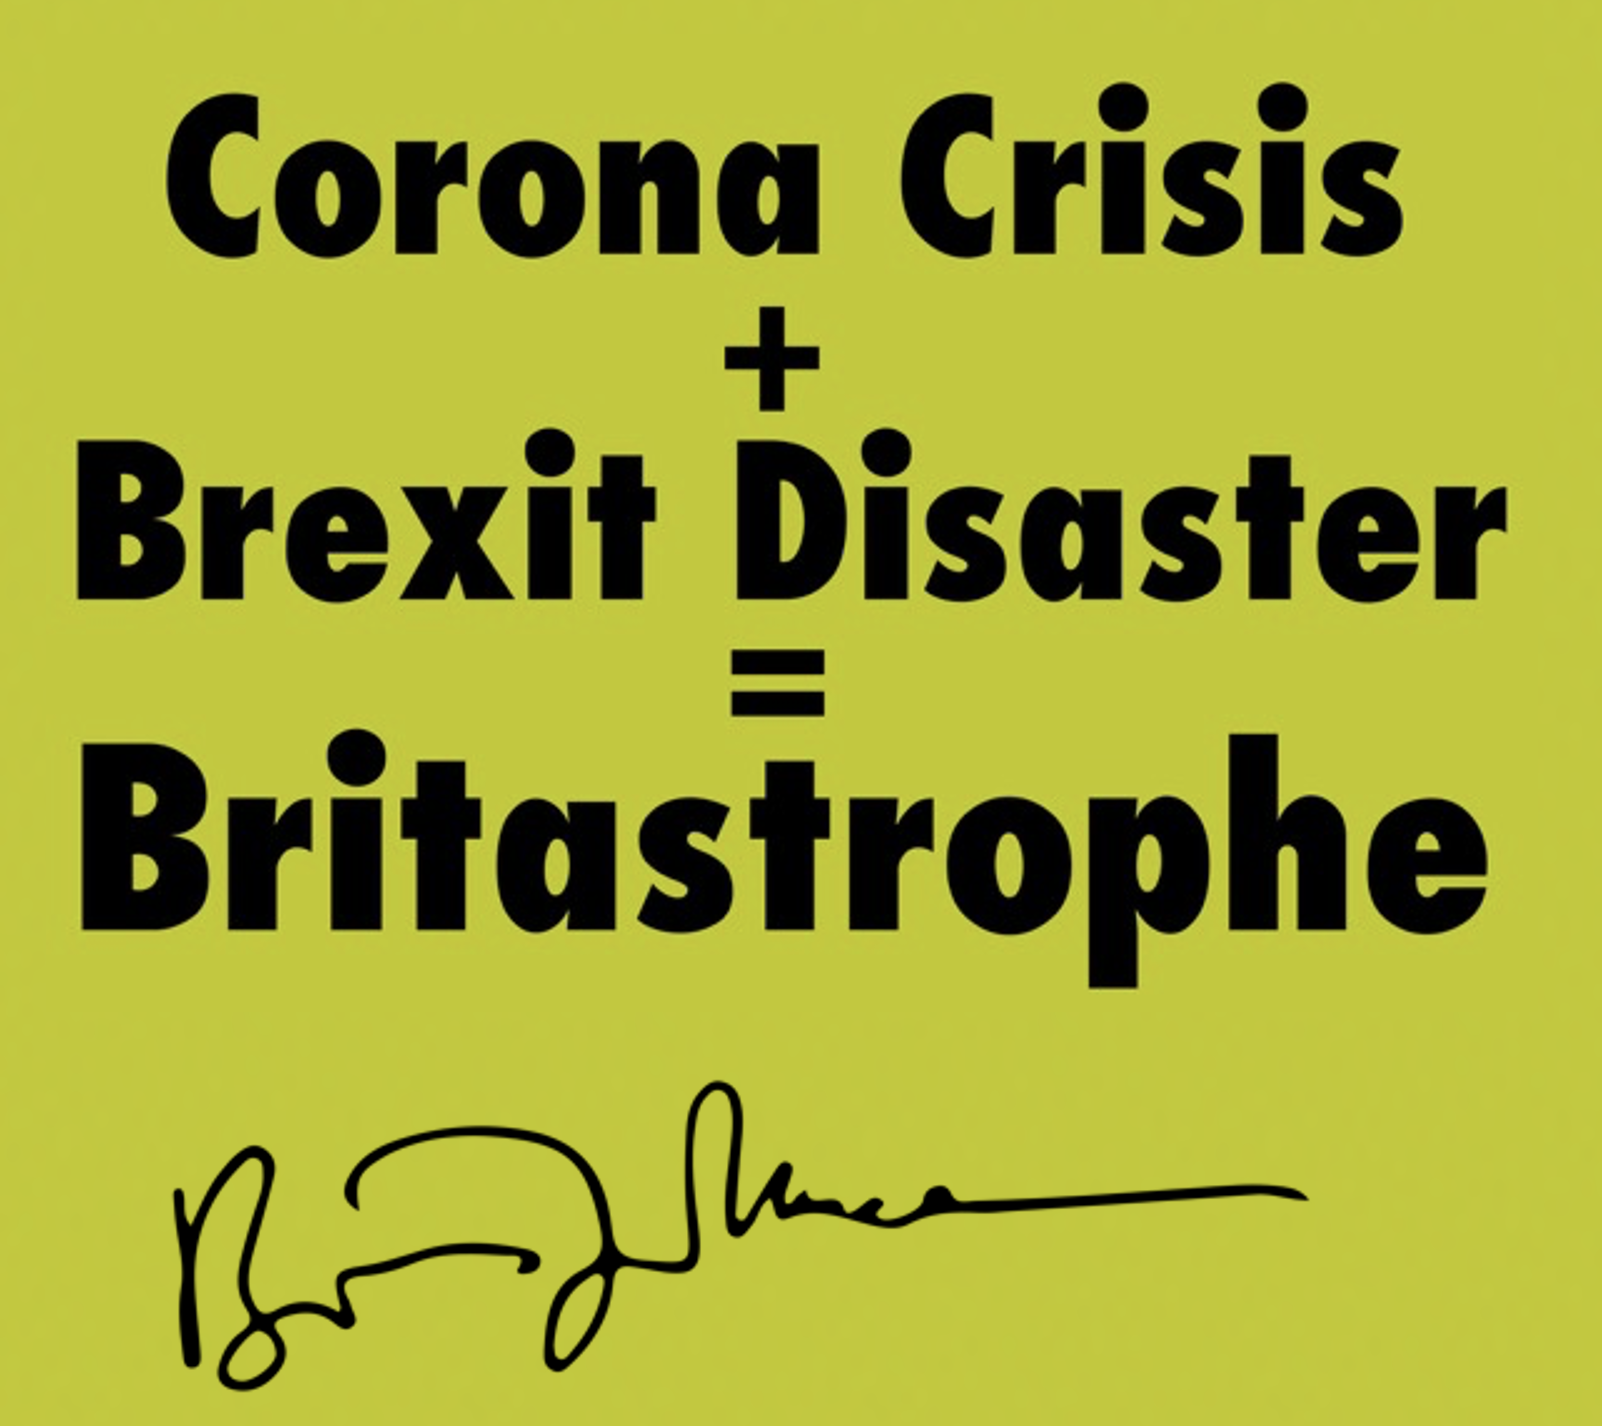 Britastrophe